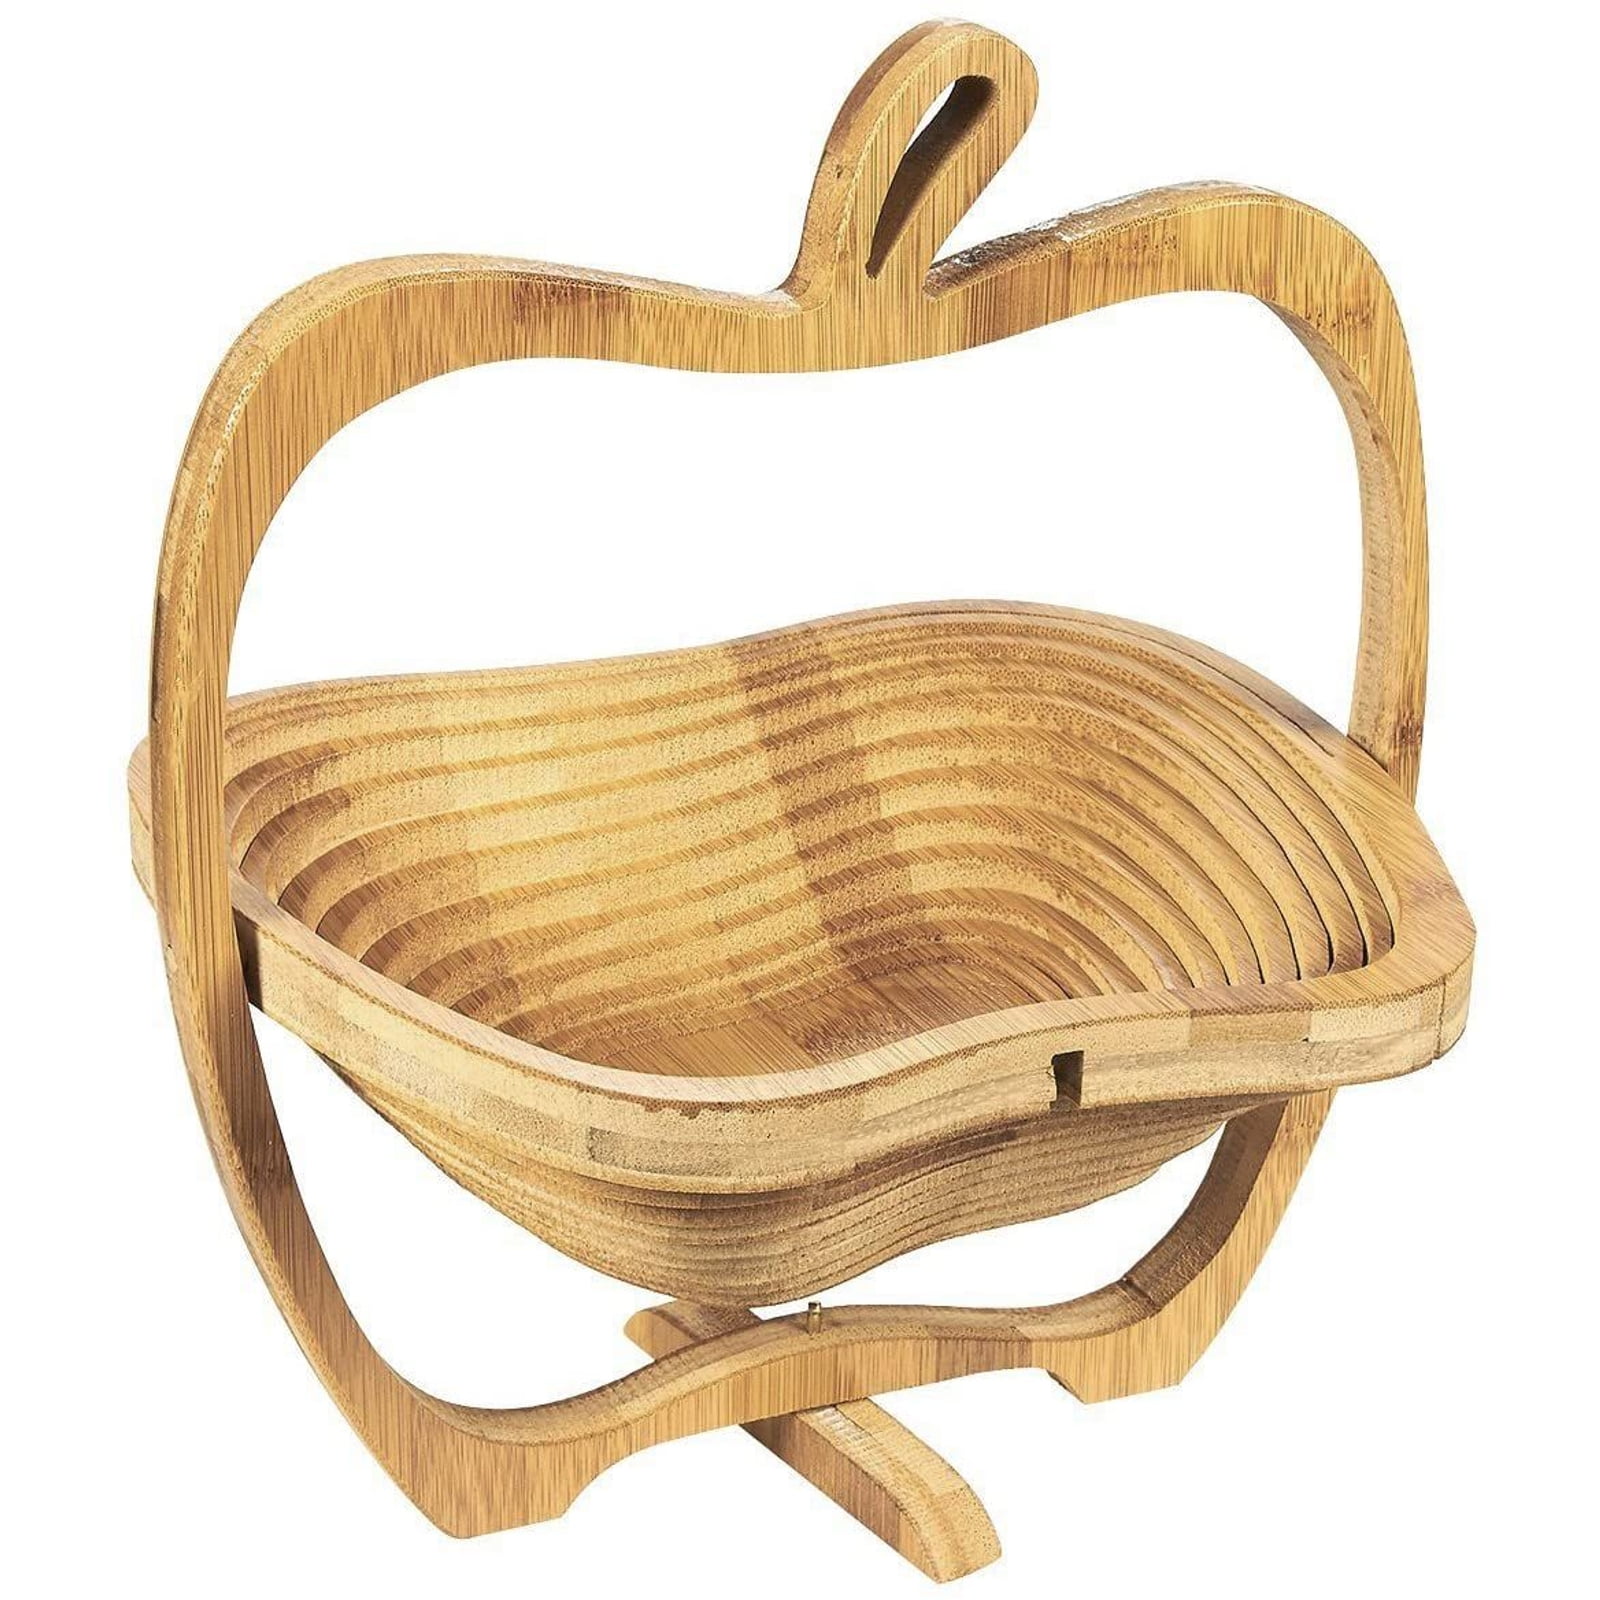 Wooden Fruit Basket Collapsible Foldable Vegetable Trivet Kitchen Rack Holder